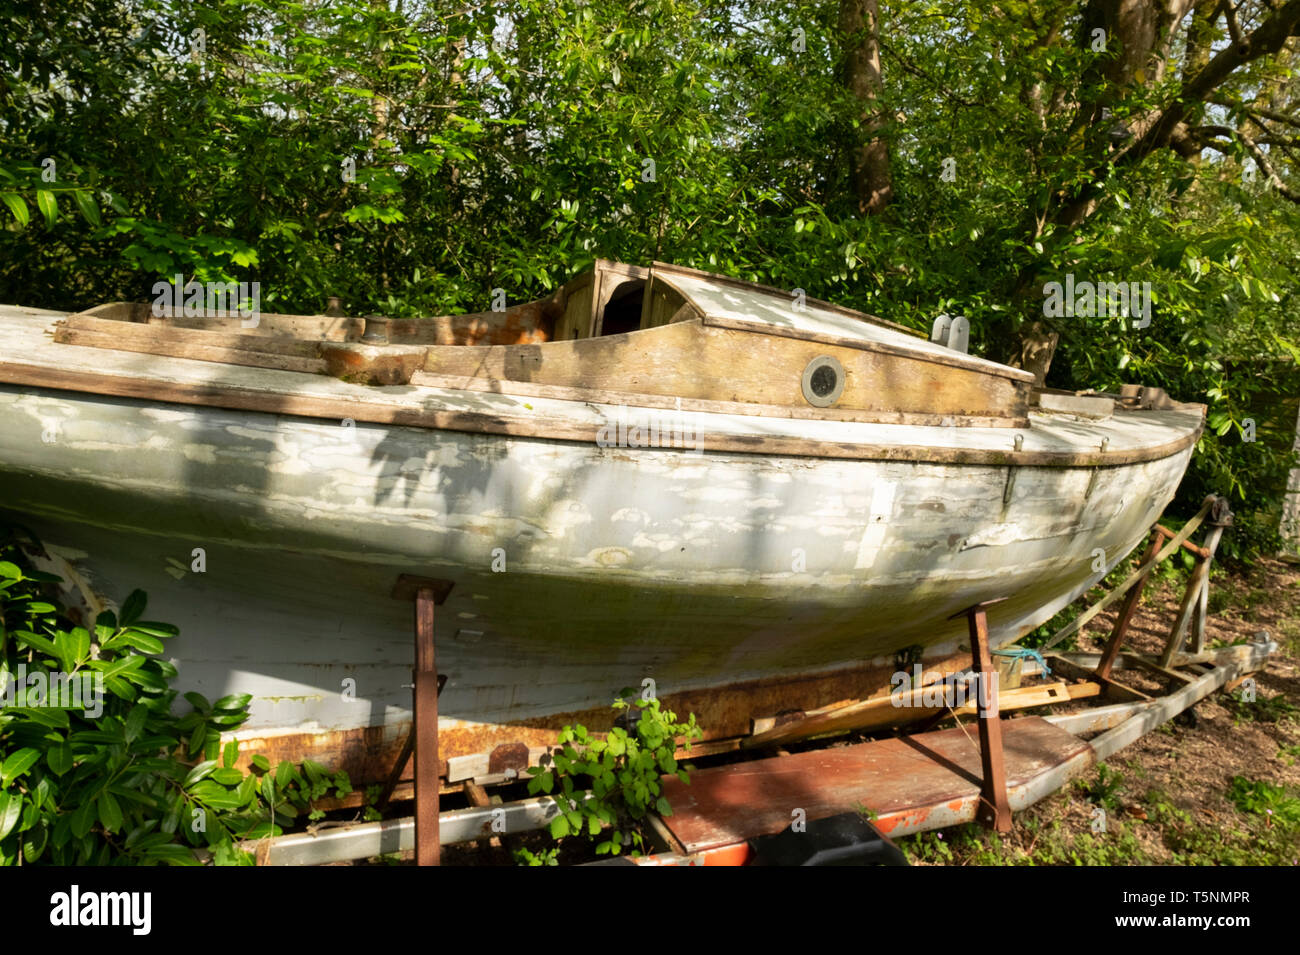 Old weathered envahis par bateau dans un jardin, Cornwall, Angleterre Banque D'Images